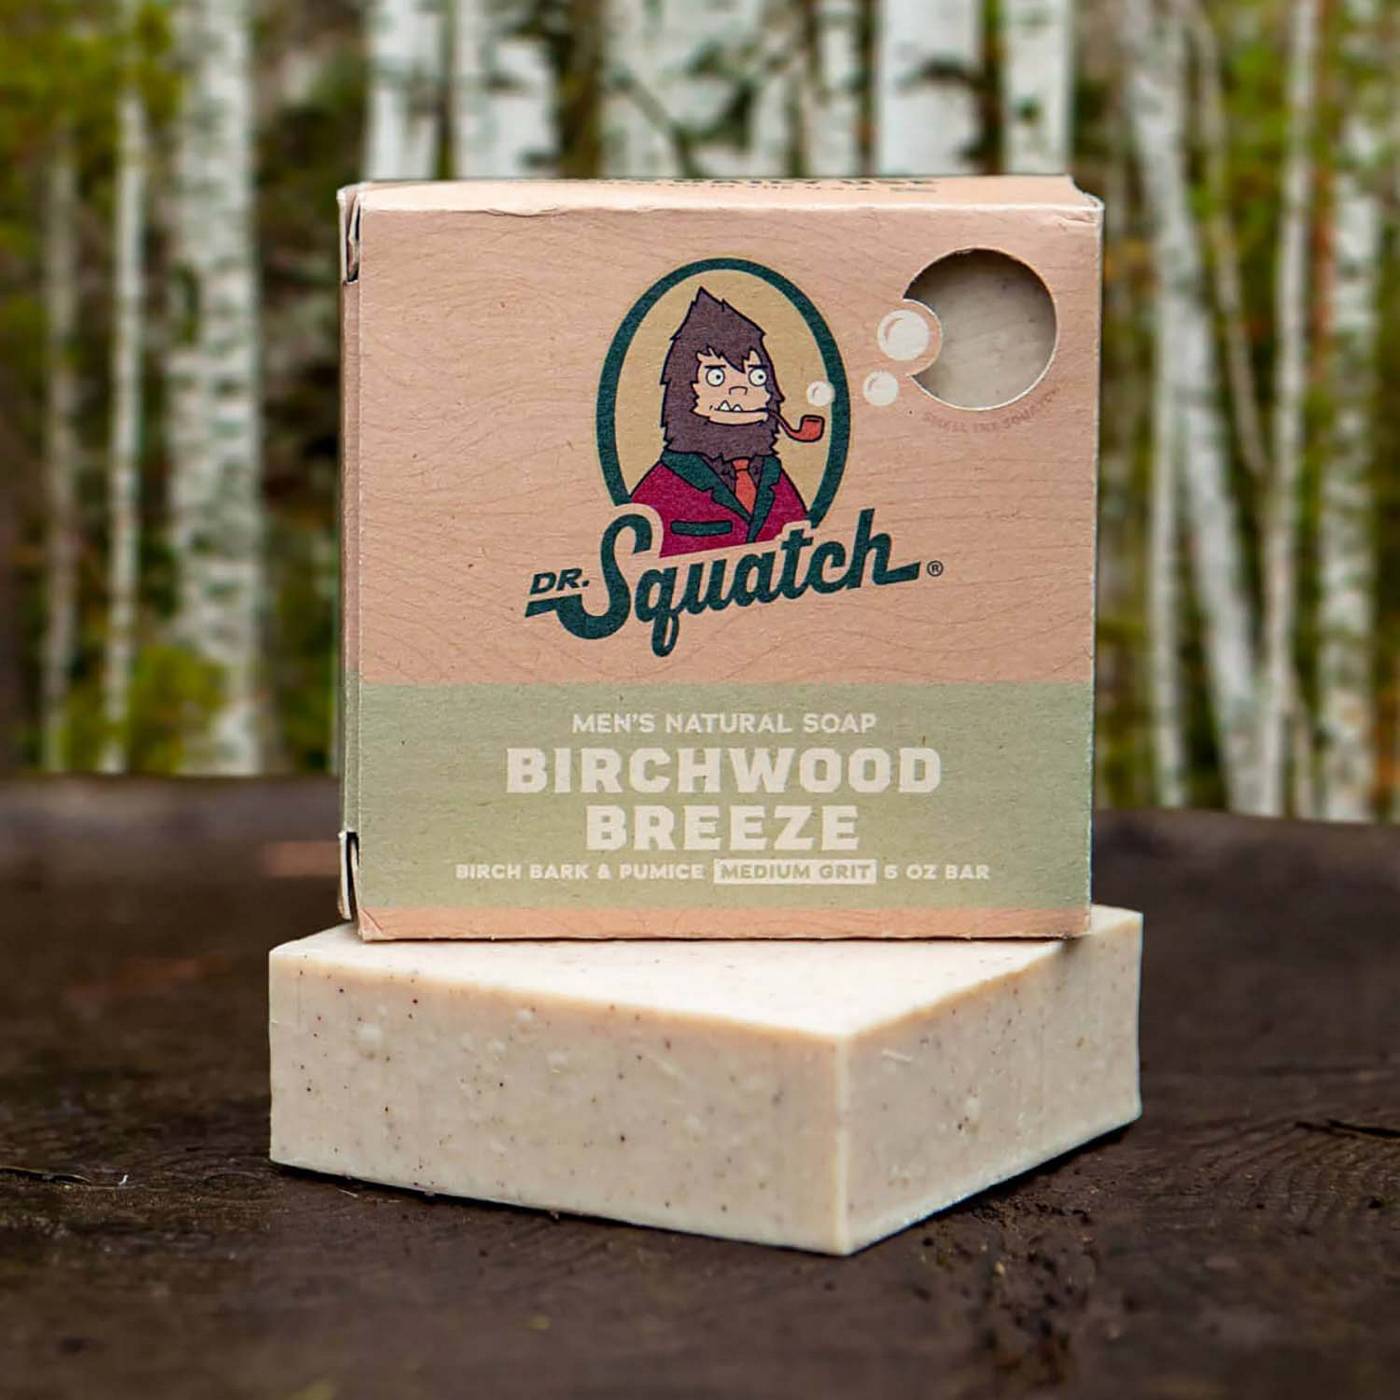 Dr. Squatch Men's Natural Soap Bar - Birchwood Breeze; image 6 of 6